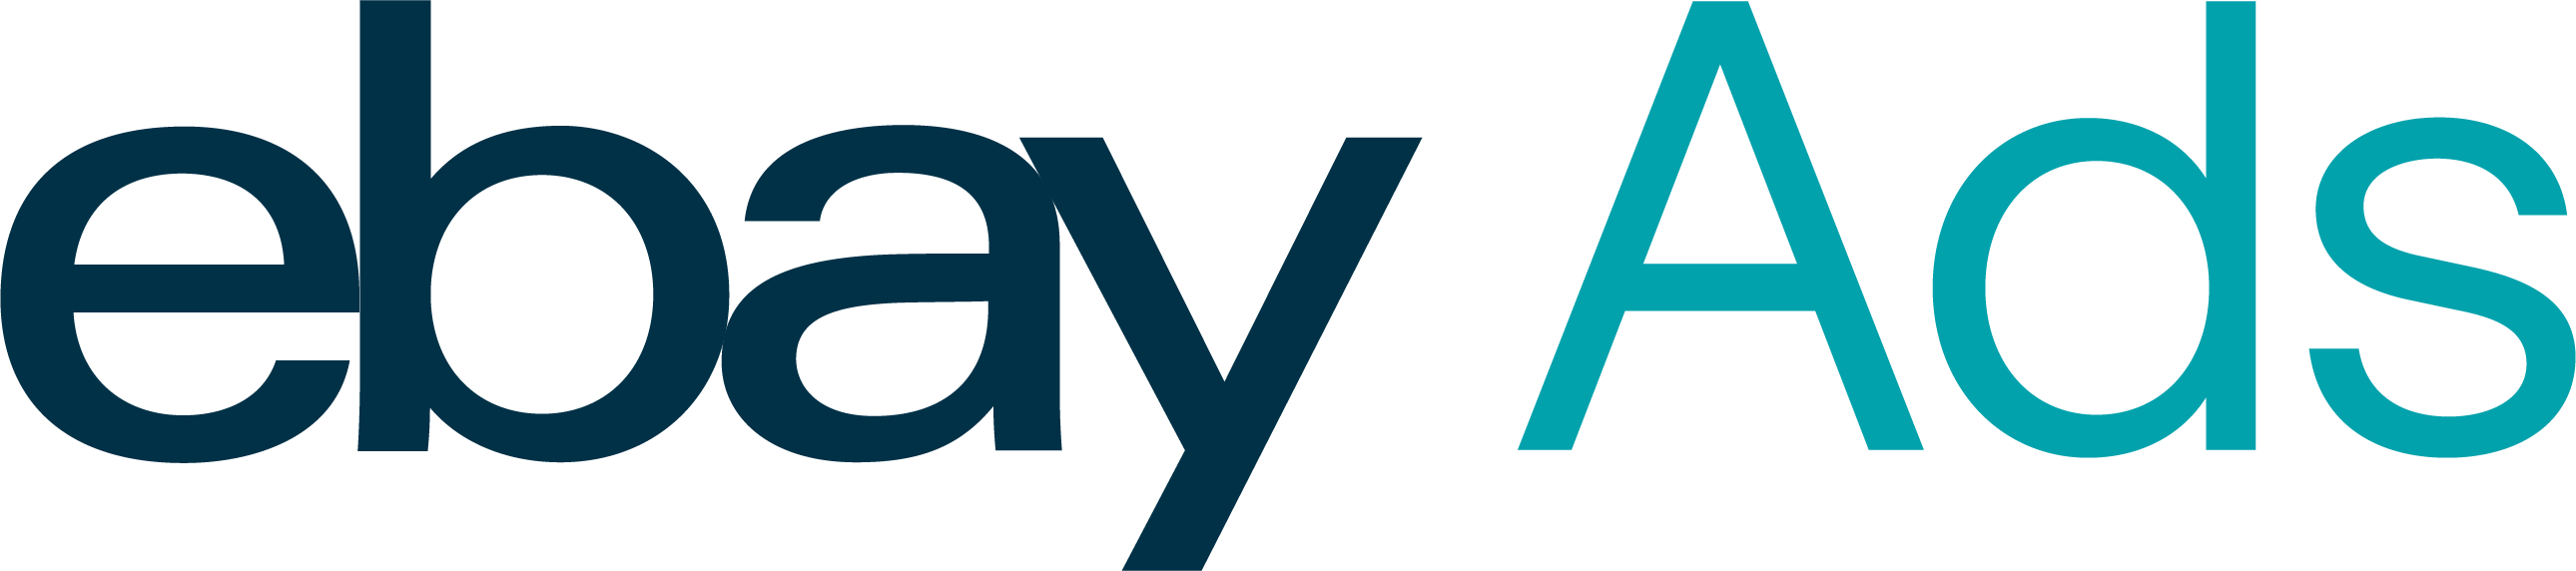 ebay-ads-logo